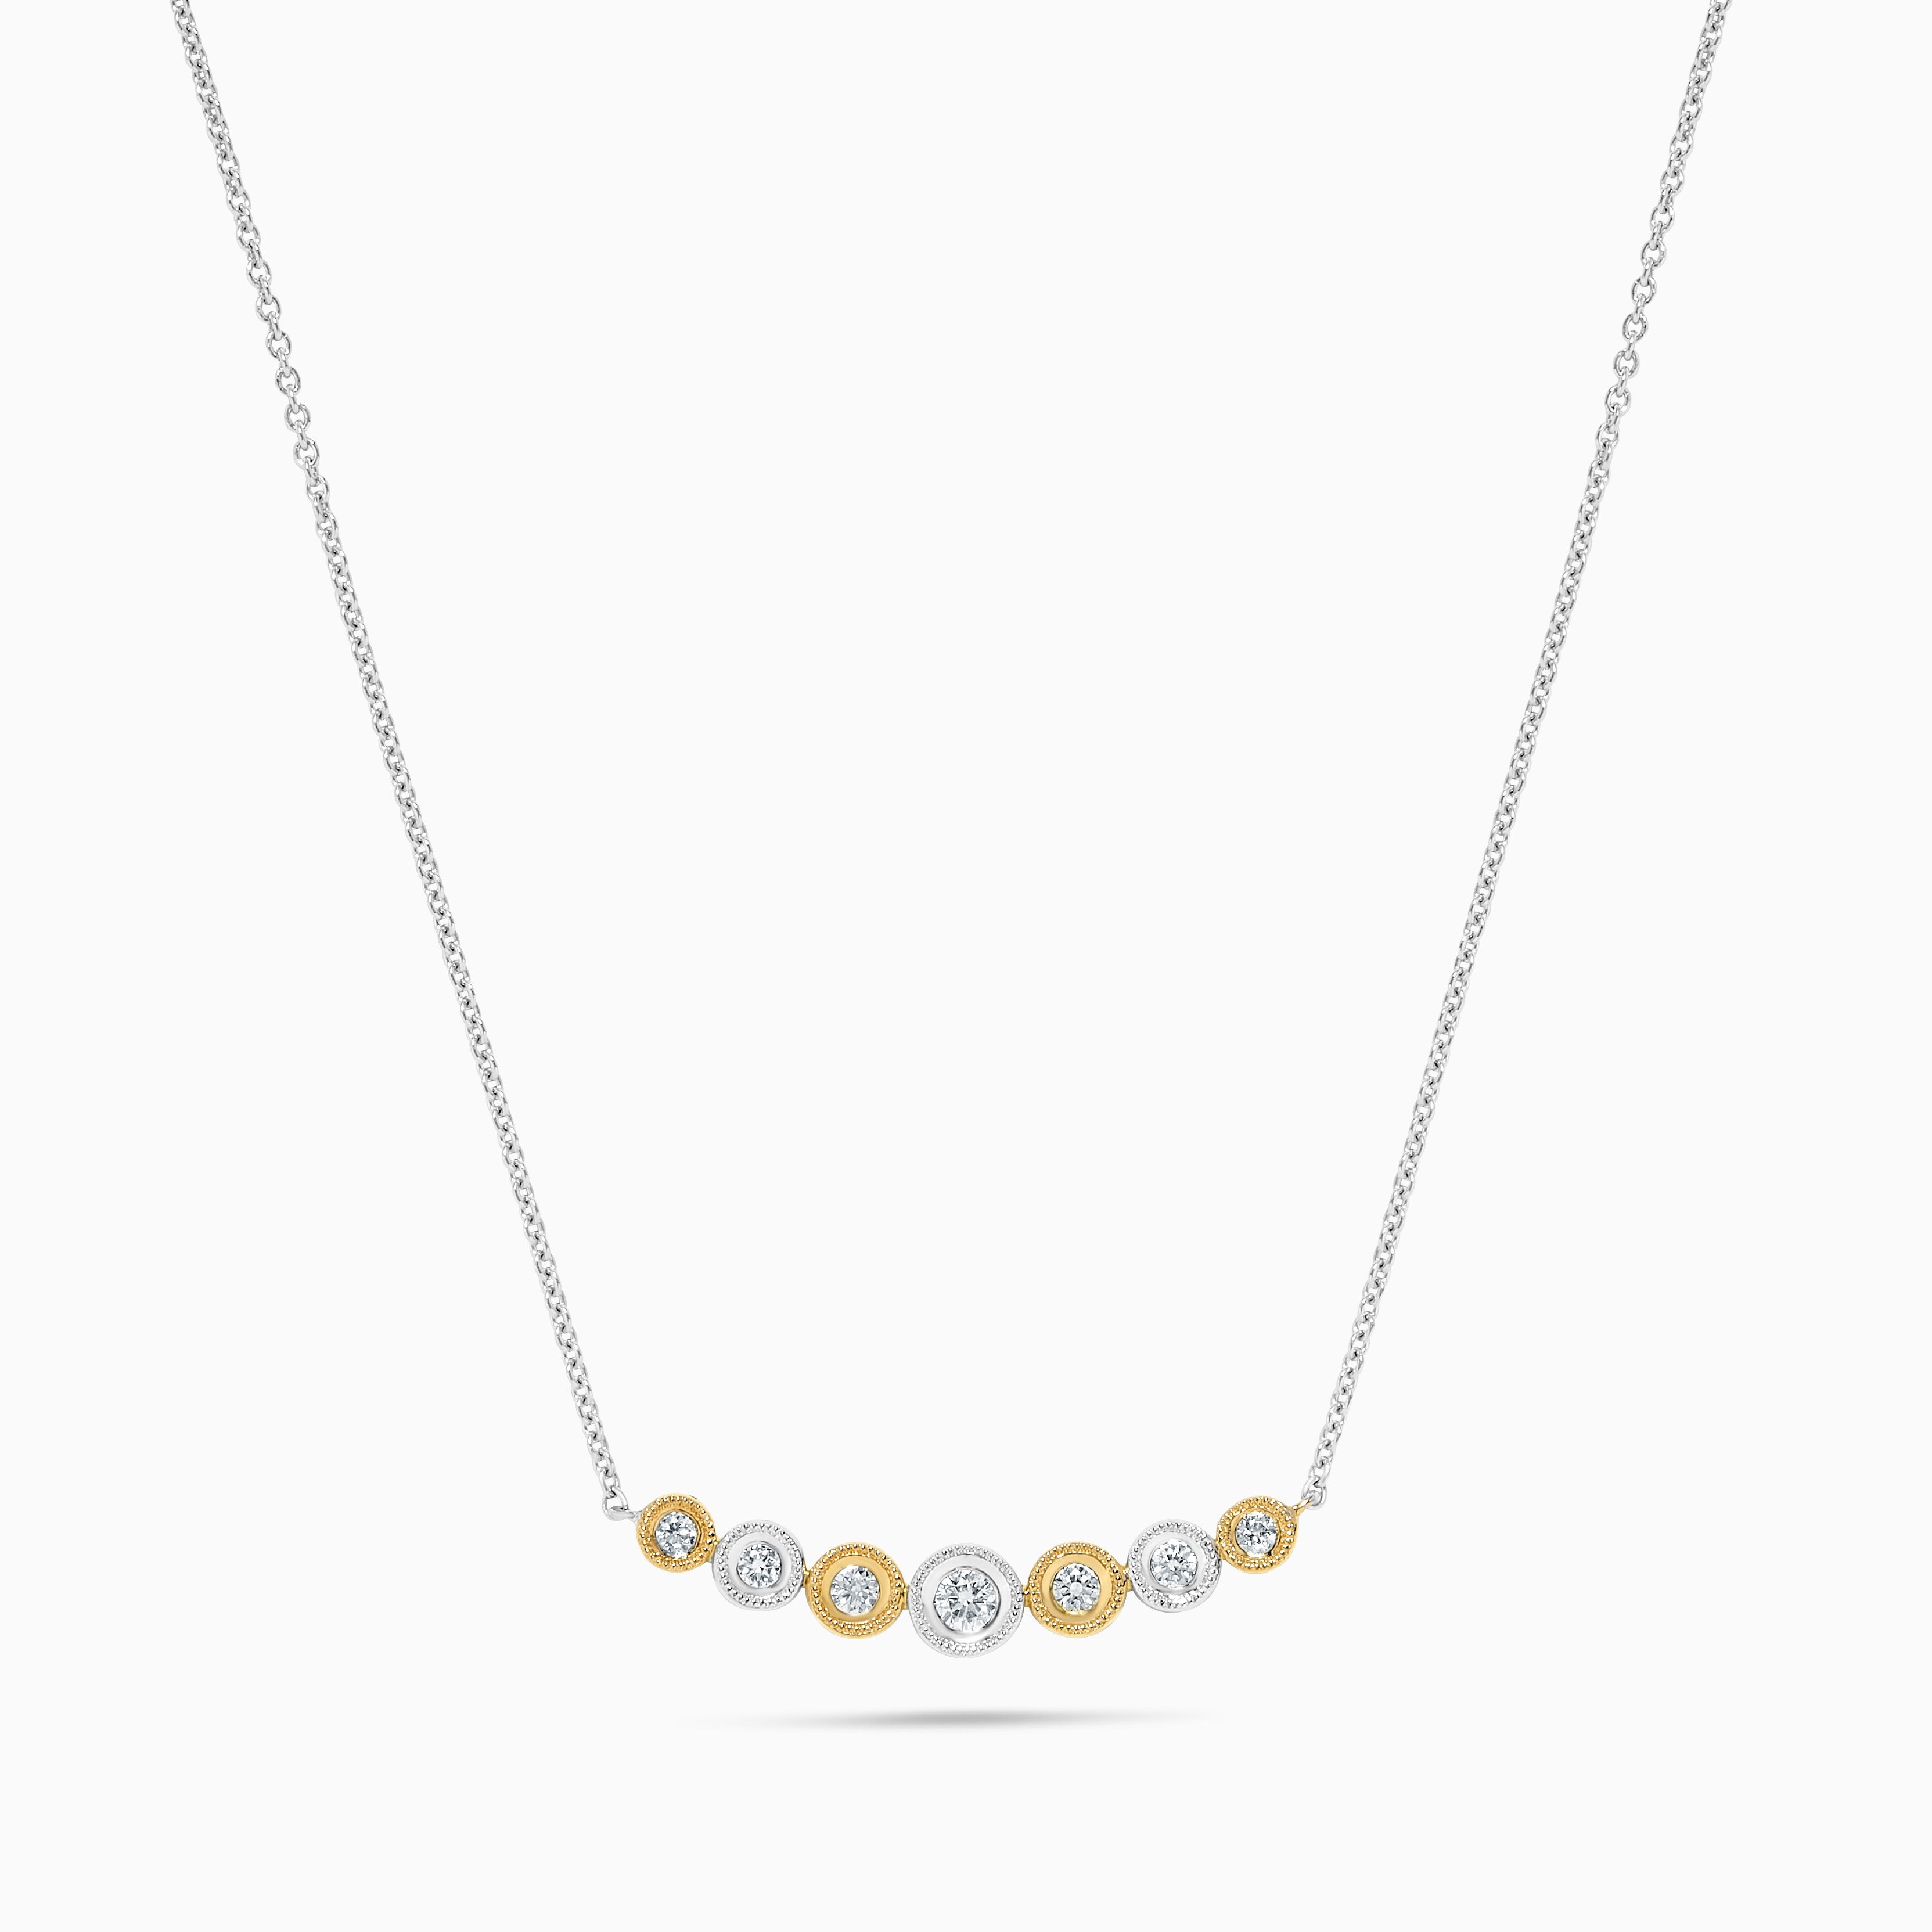 Collier en or avec diamants ronds naturels jaunes et blancs de 21 carat TW